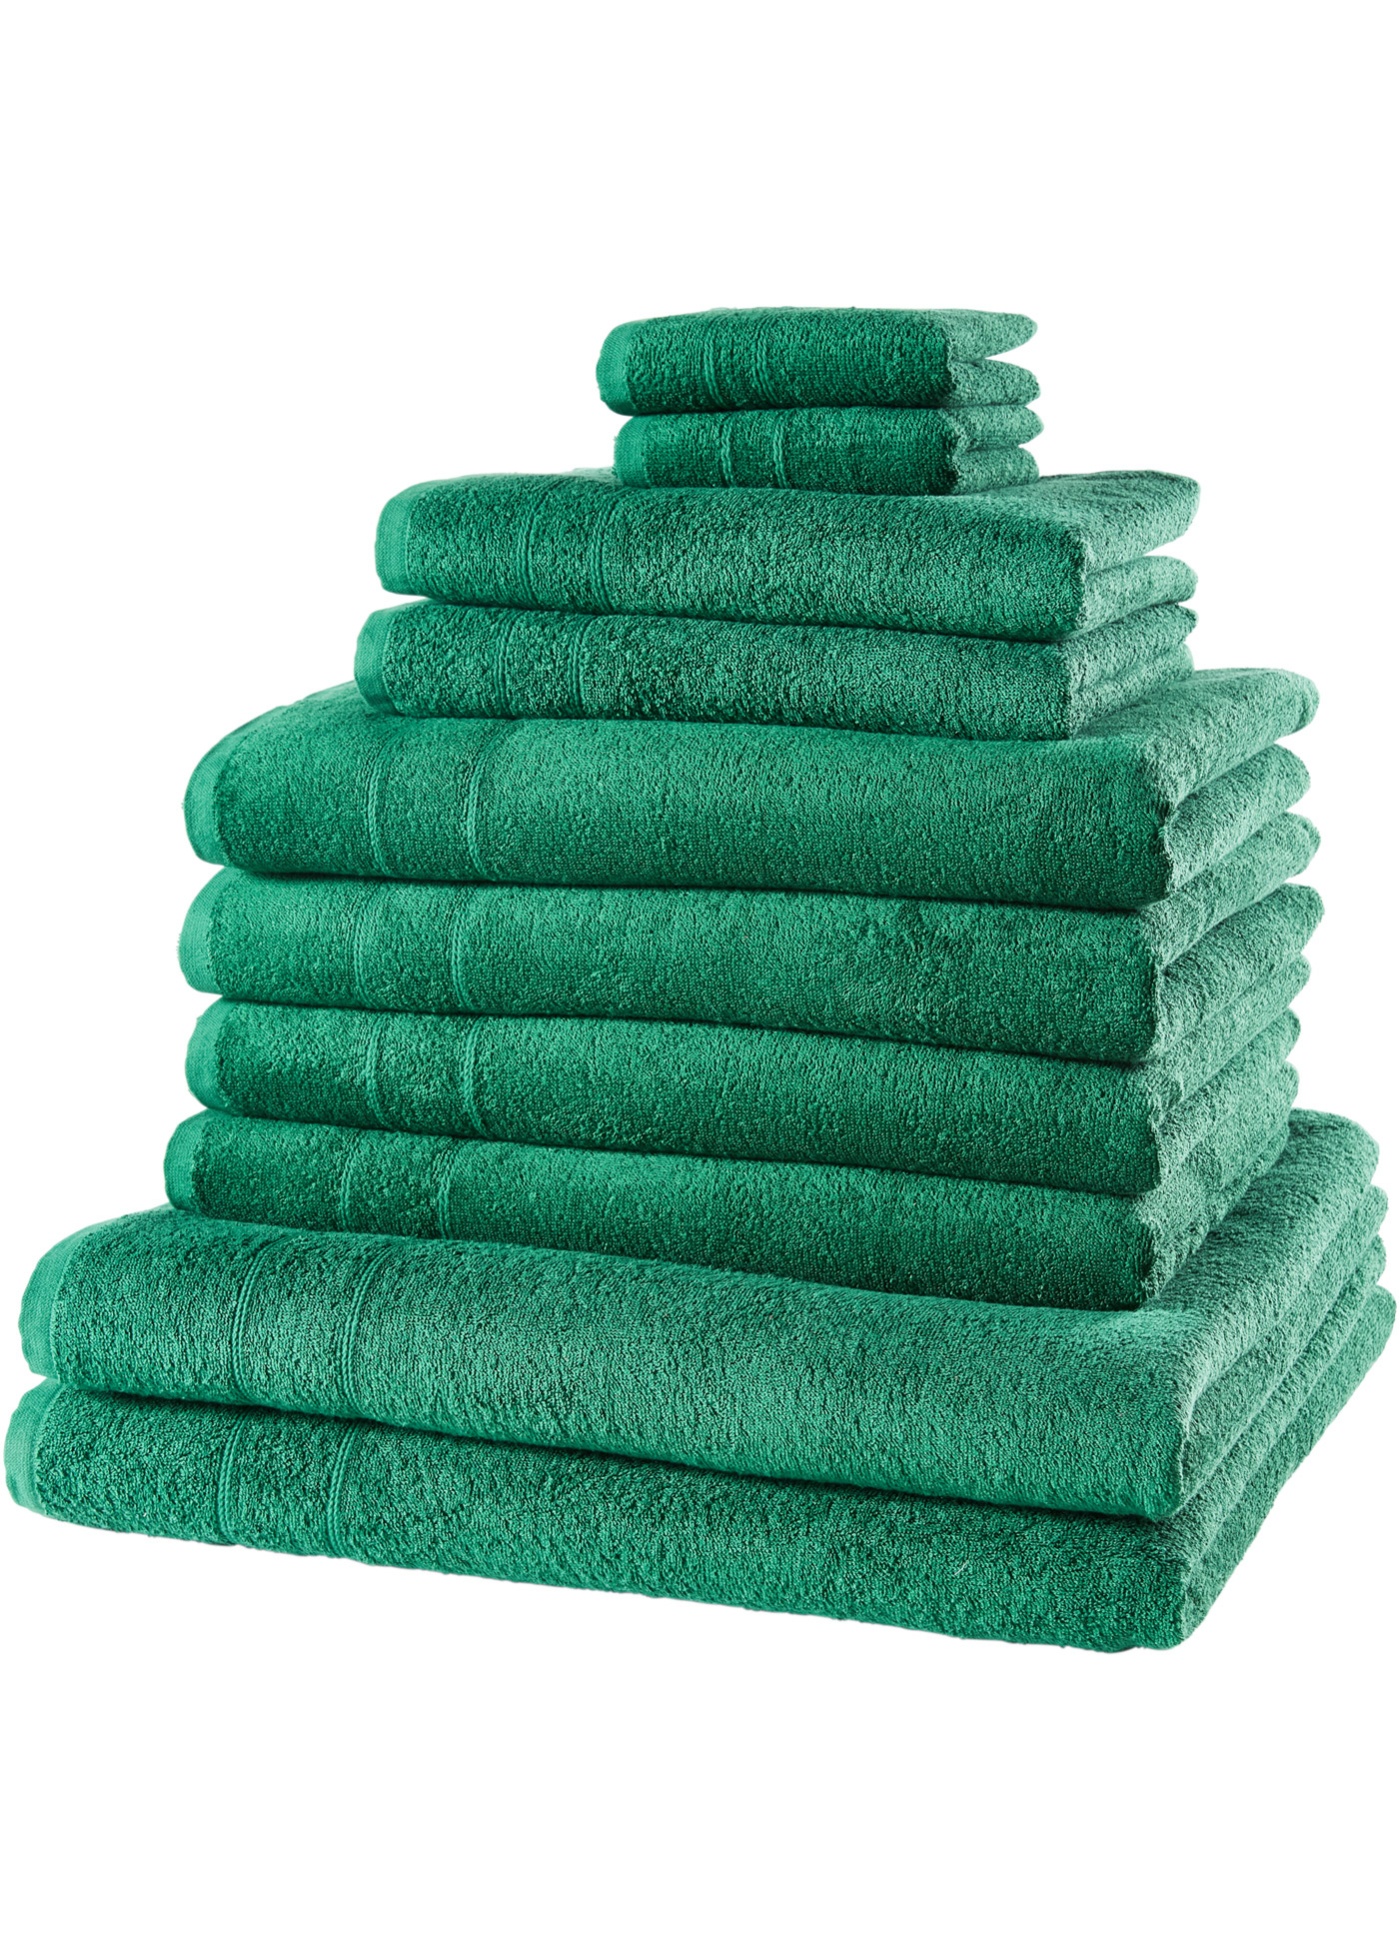 Handdoeken (10-dlg. set)